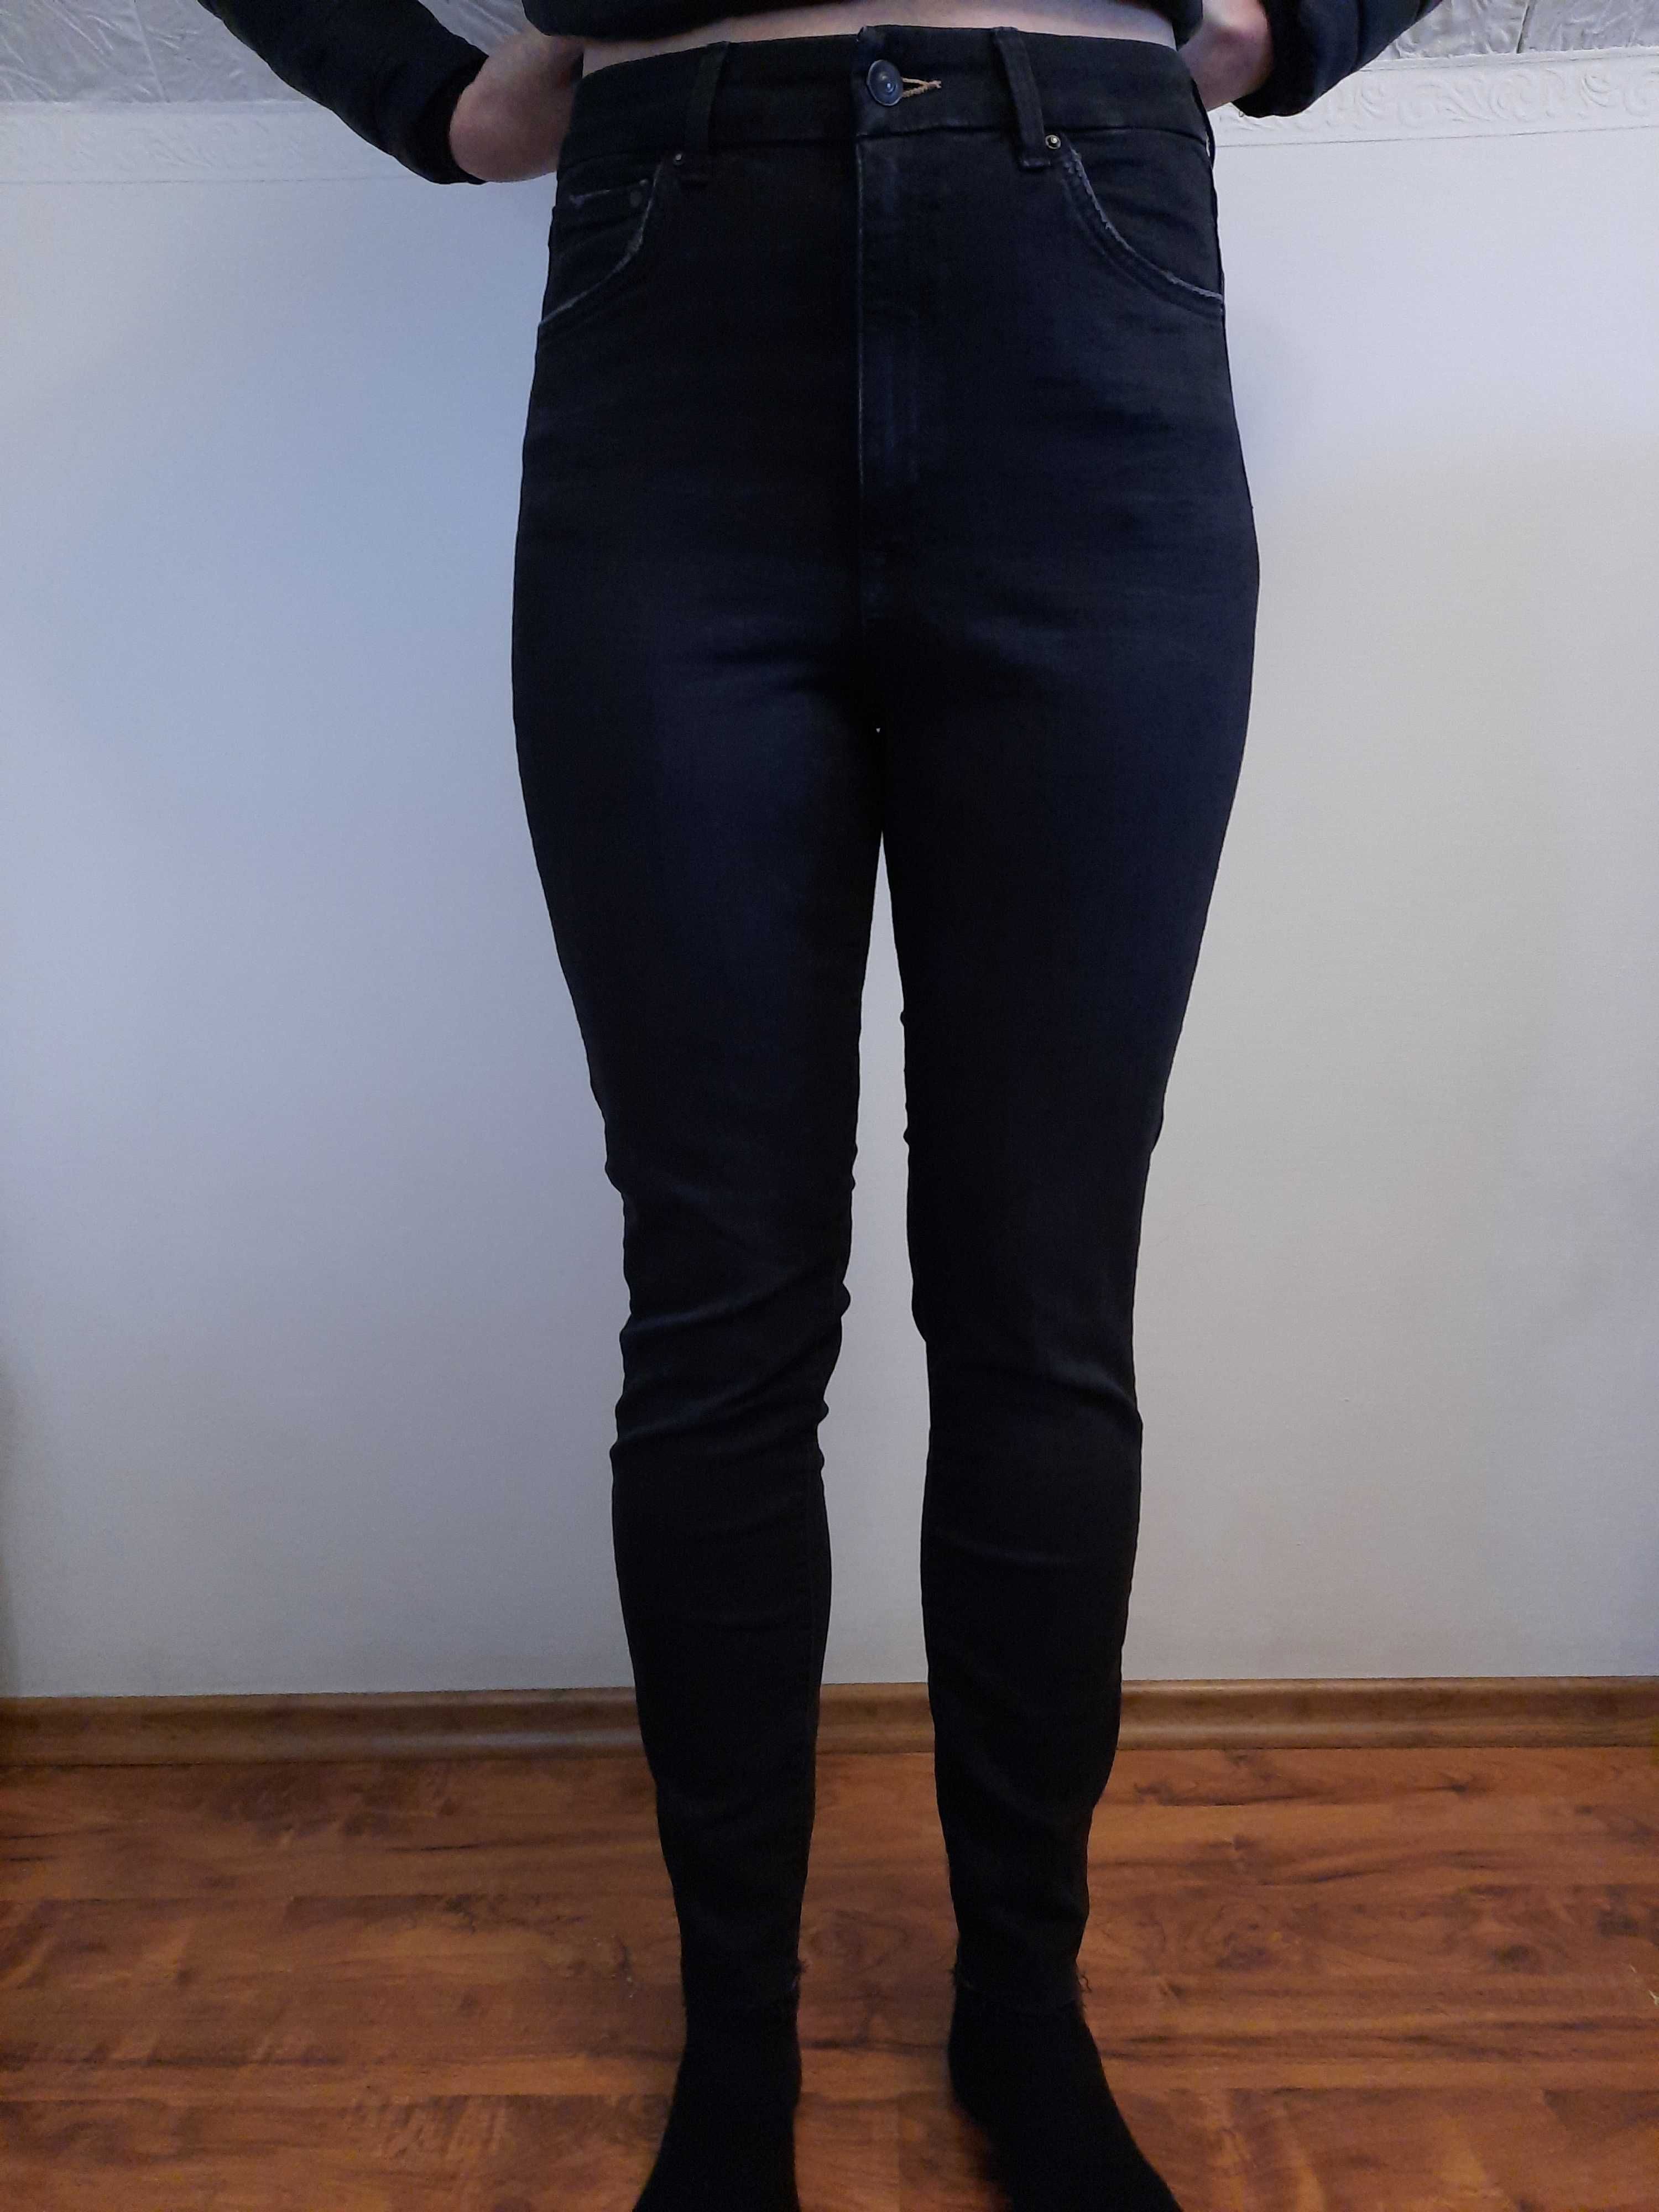 Spodnie jeansowe czarne jeansy skinny wysoki stan Denim 31 M